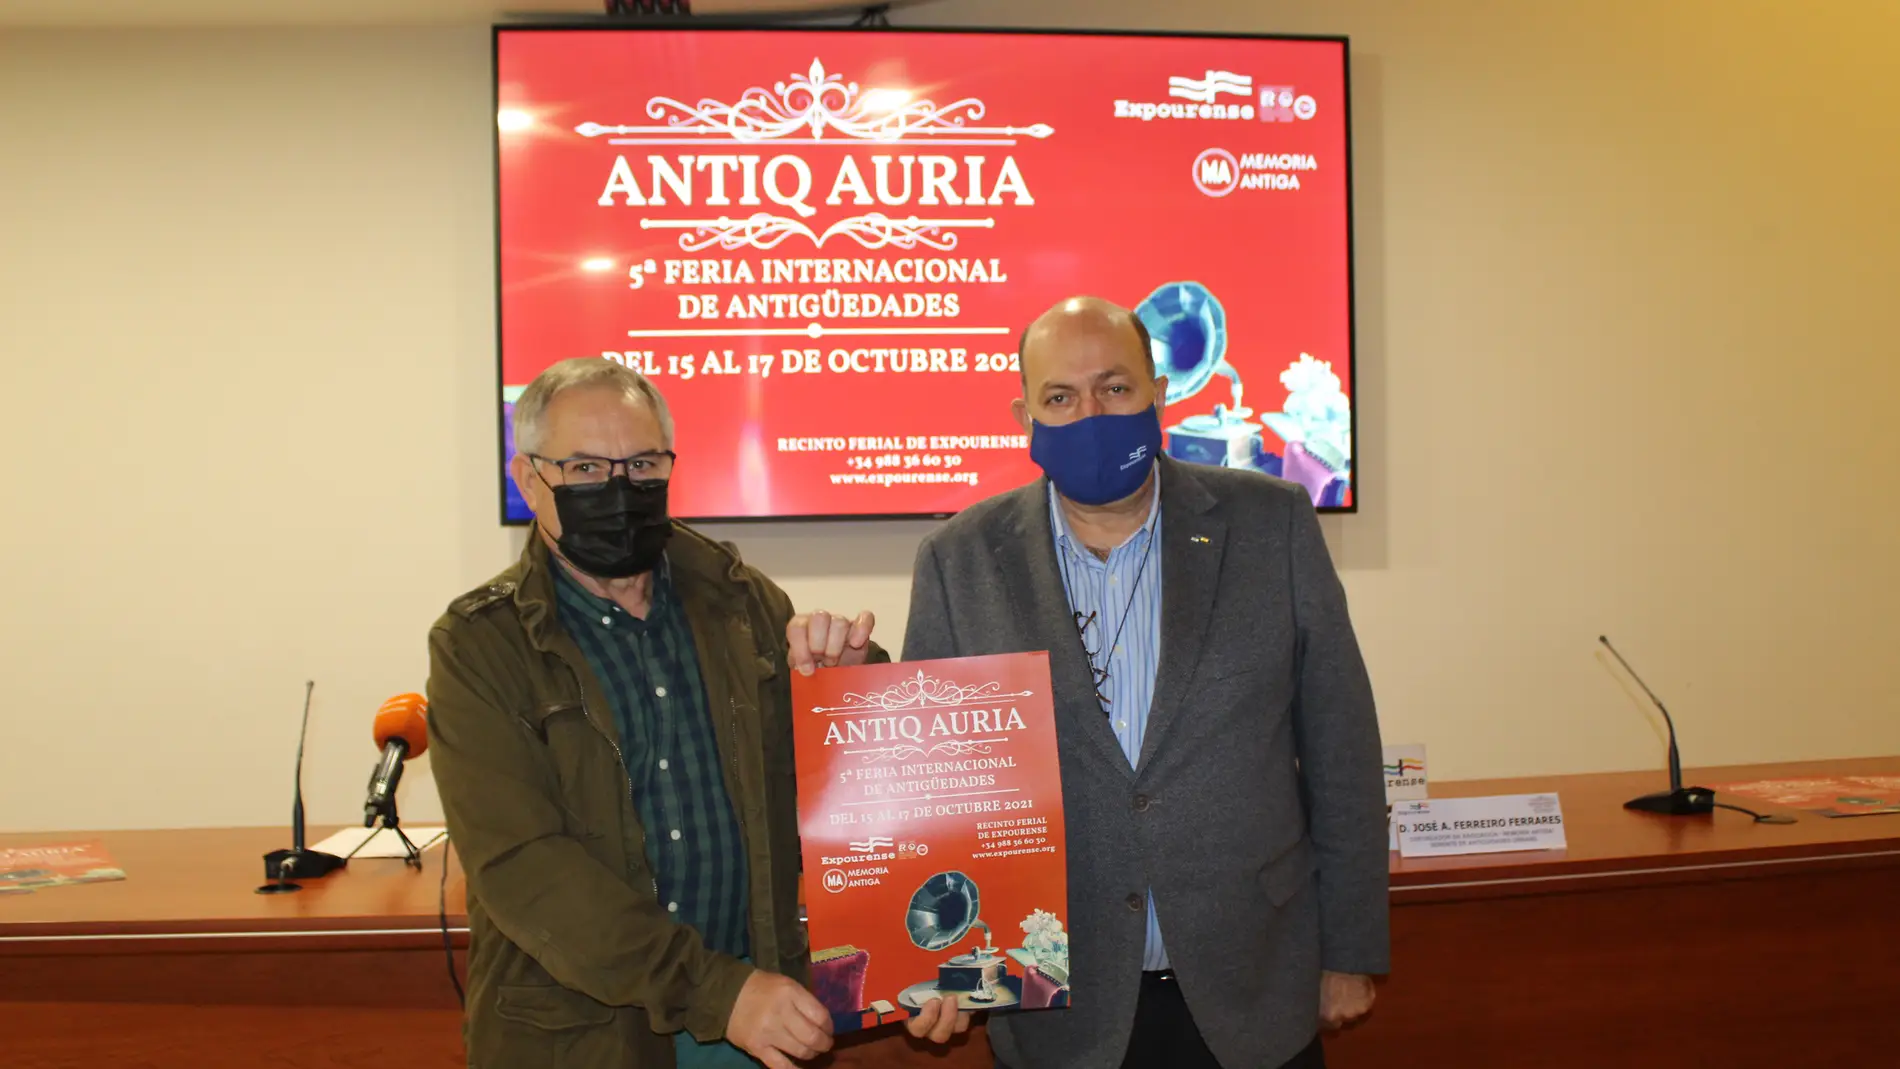 La 5ª edición de Antiq Auria reúne en Expourense a 35 expositores de 3 países